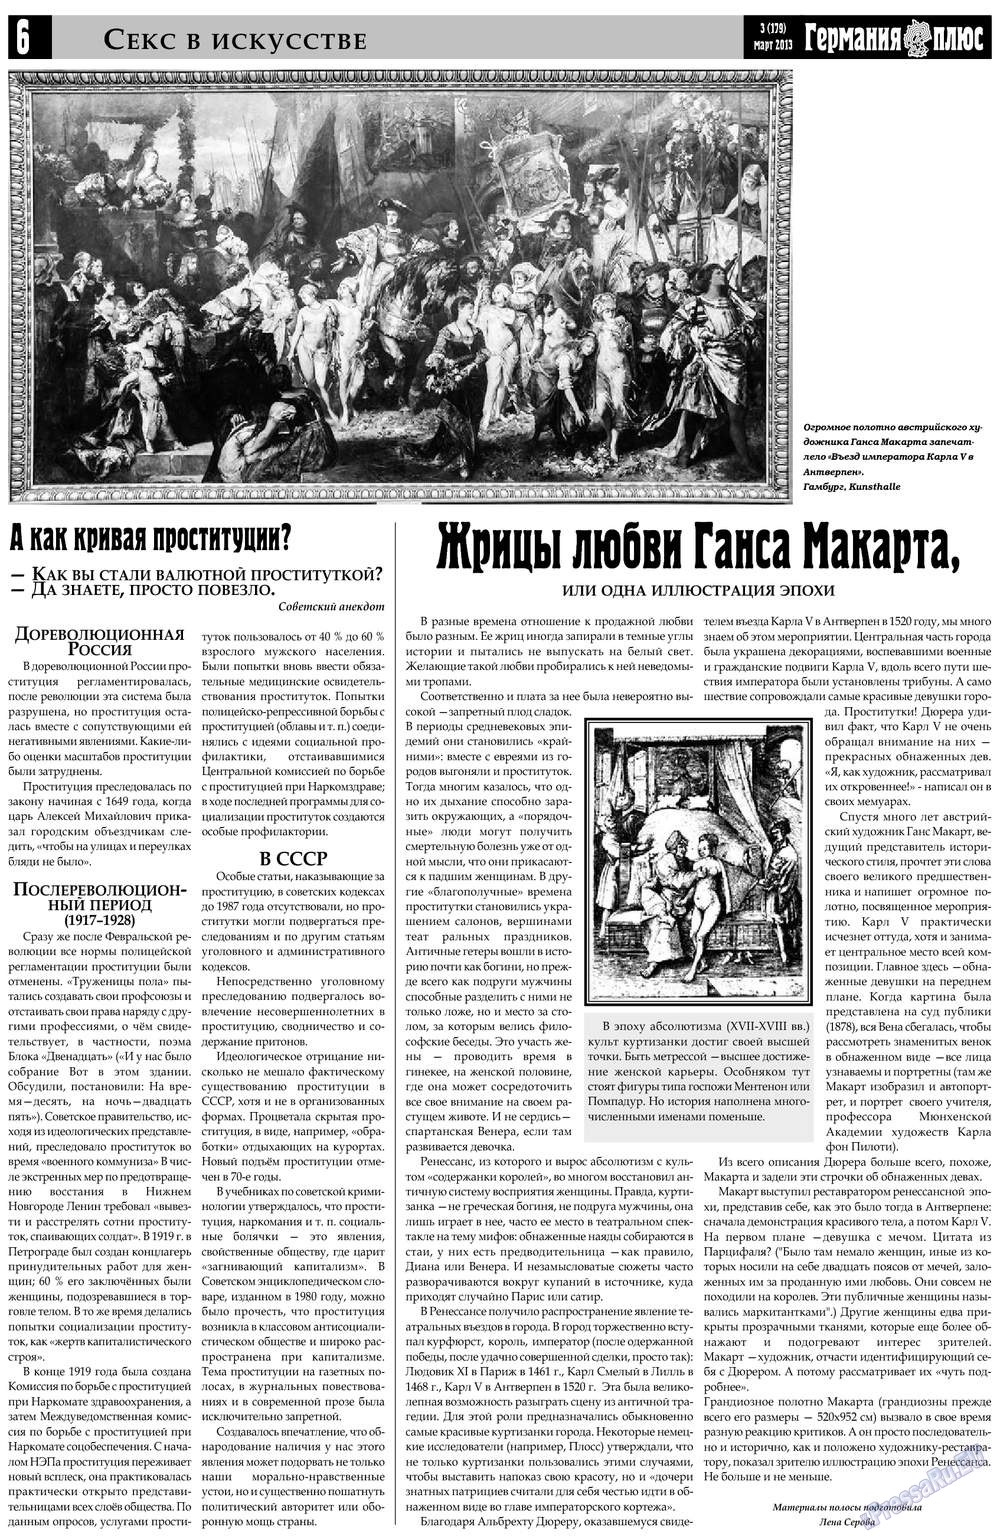 Германия плюс, газета. 2013 №3 стр.6